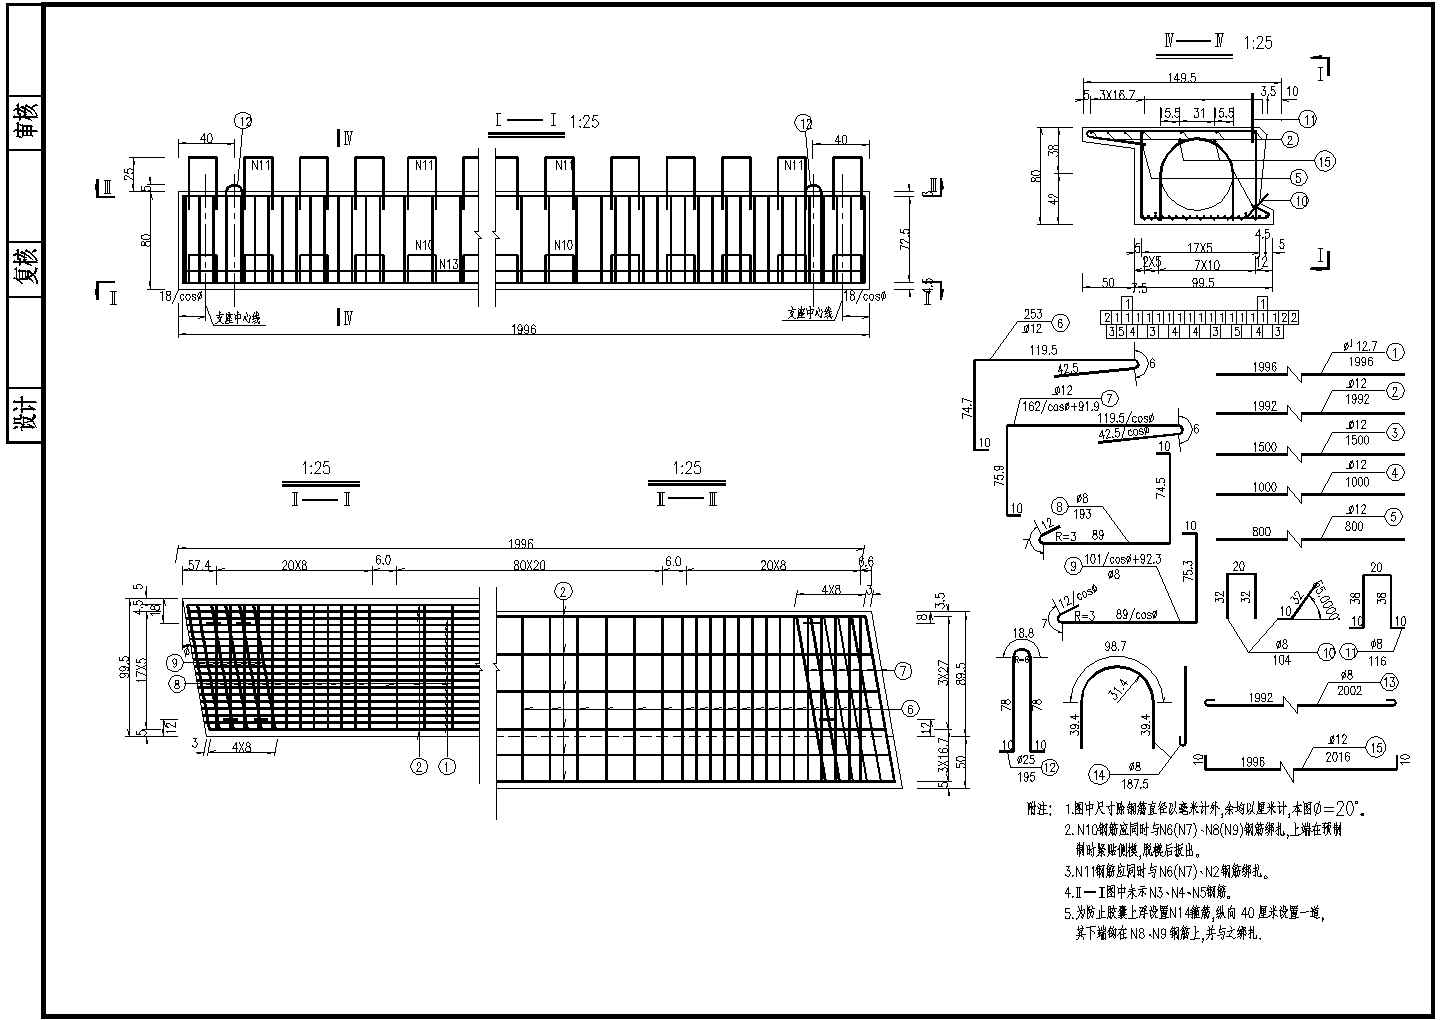 7x20m预应力混凝土空心板边板钢筋构造节点详图设计